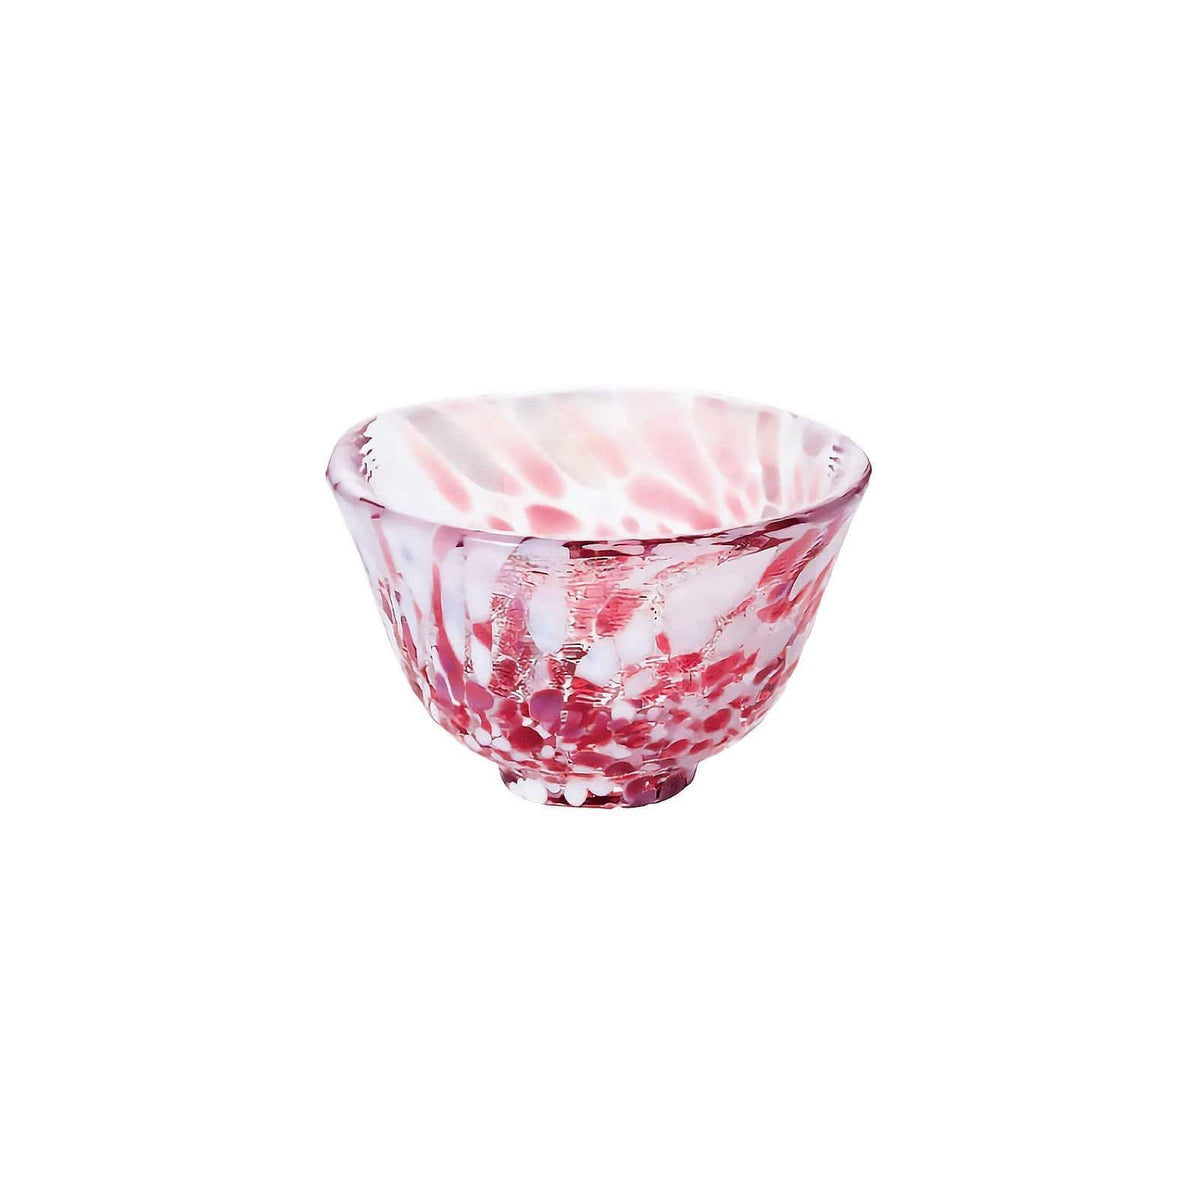 Hokuyo Tsugaru Vidro Hand-Blown Sake Glass 50ml (4 Colours) Pink Glassware